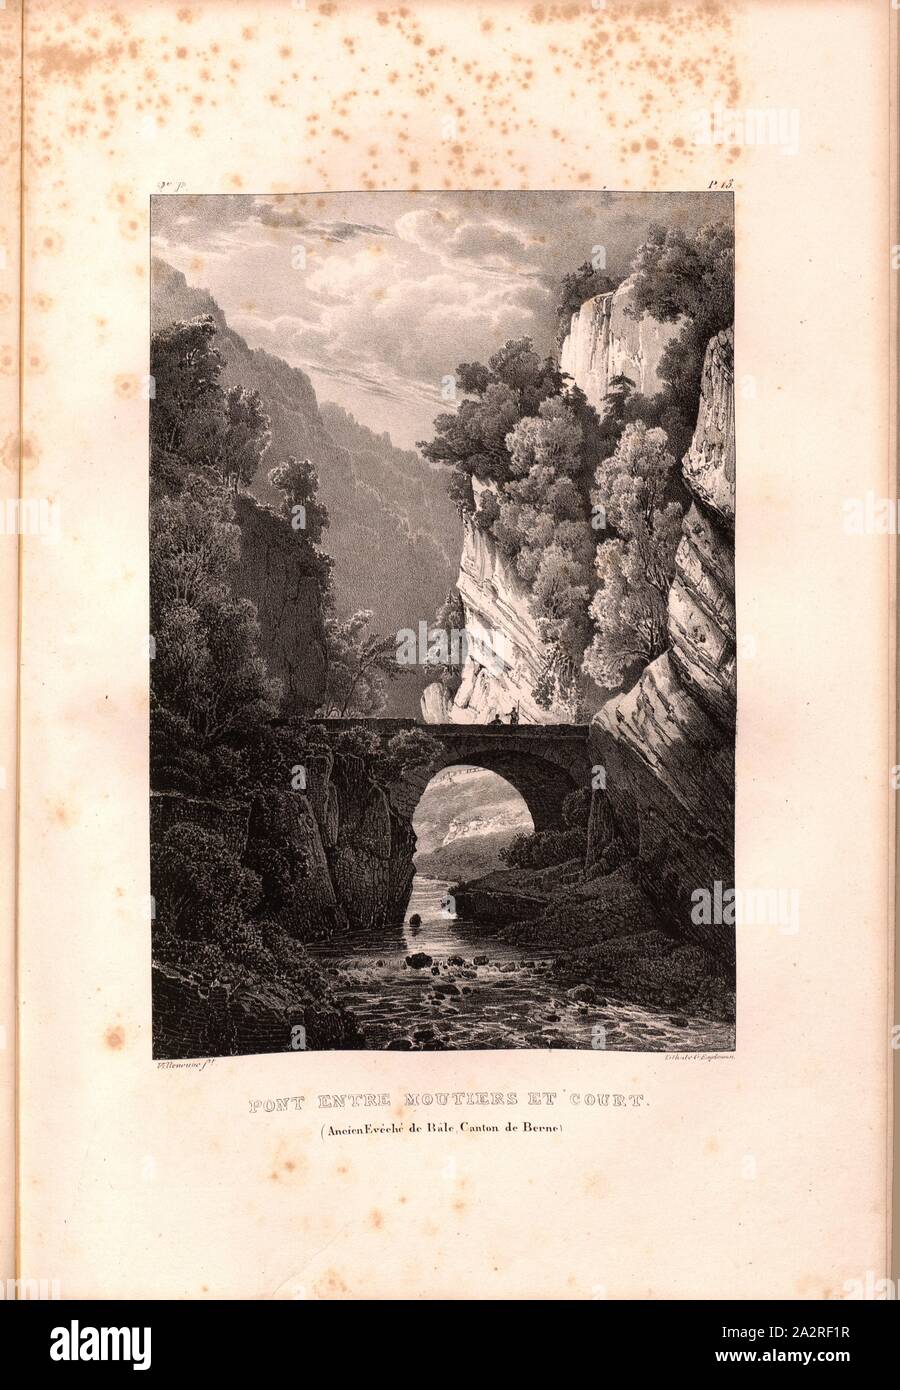 Bridge between Moutiers and Court, Bridge between Moutiers and Cours in the Klus, Signed: Villeneuve, G. Engelmann, lithograph, pl. 12 (vol. 1, part 2), Villeneuve, M. (ft.); Engelmann, Godefroy (lith.), 1823, Hilaire Léon Sazerac, Godefroy Engelmann: Lettres sur la Suisse (...). Paris: [s.n.], 1823-1832 Stock Photo